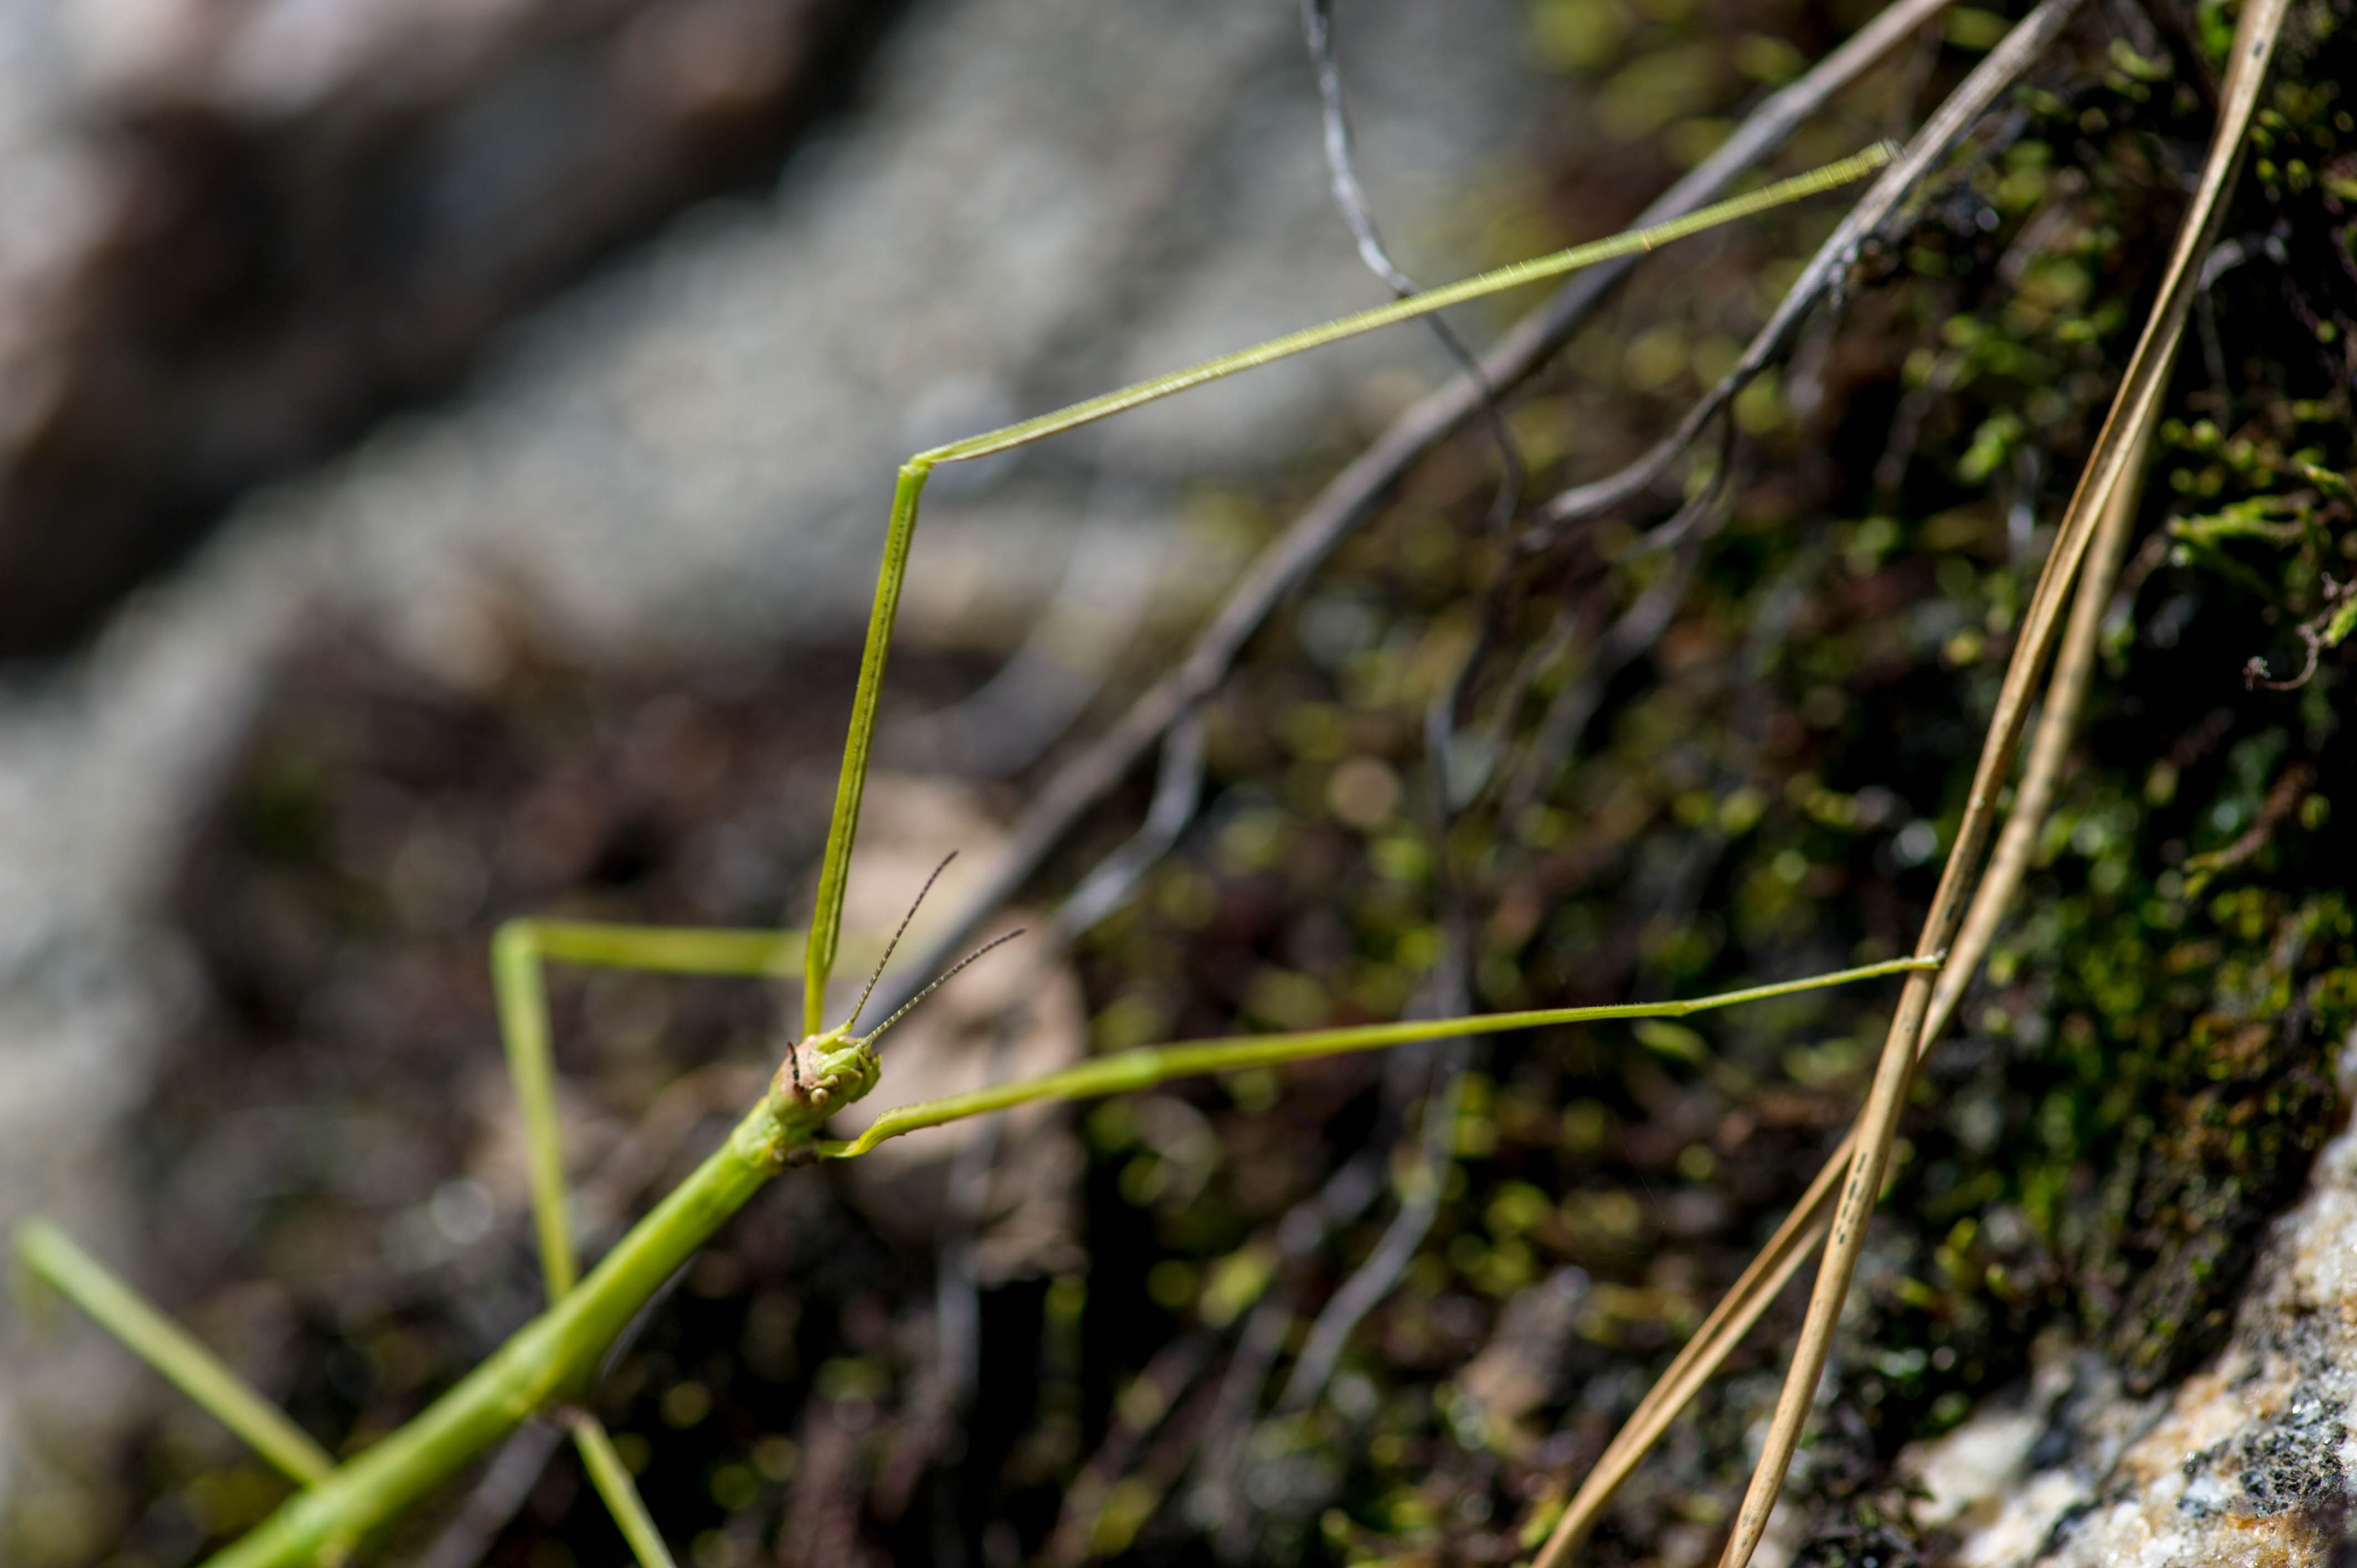 ナナフシ ナナフシモドキ の不思議な生態 虫の写真と生態なら昆虫写真図鑑 ムシミル